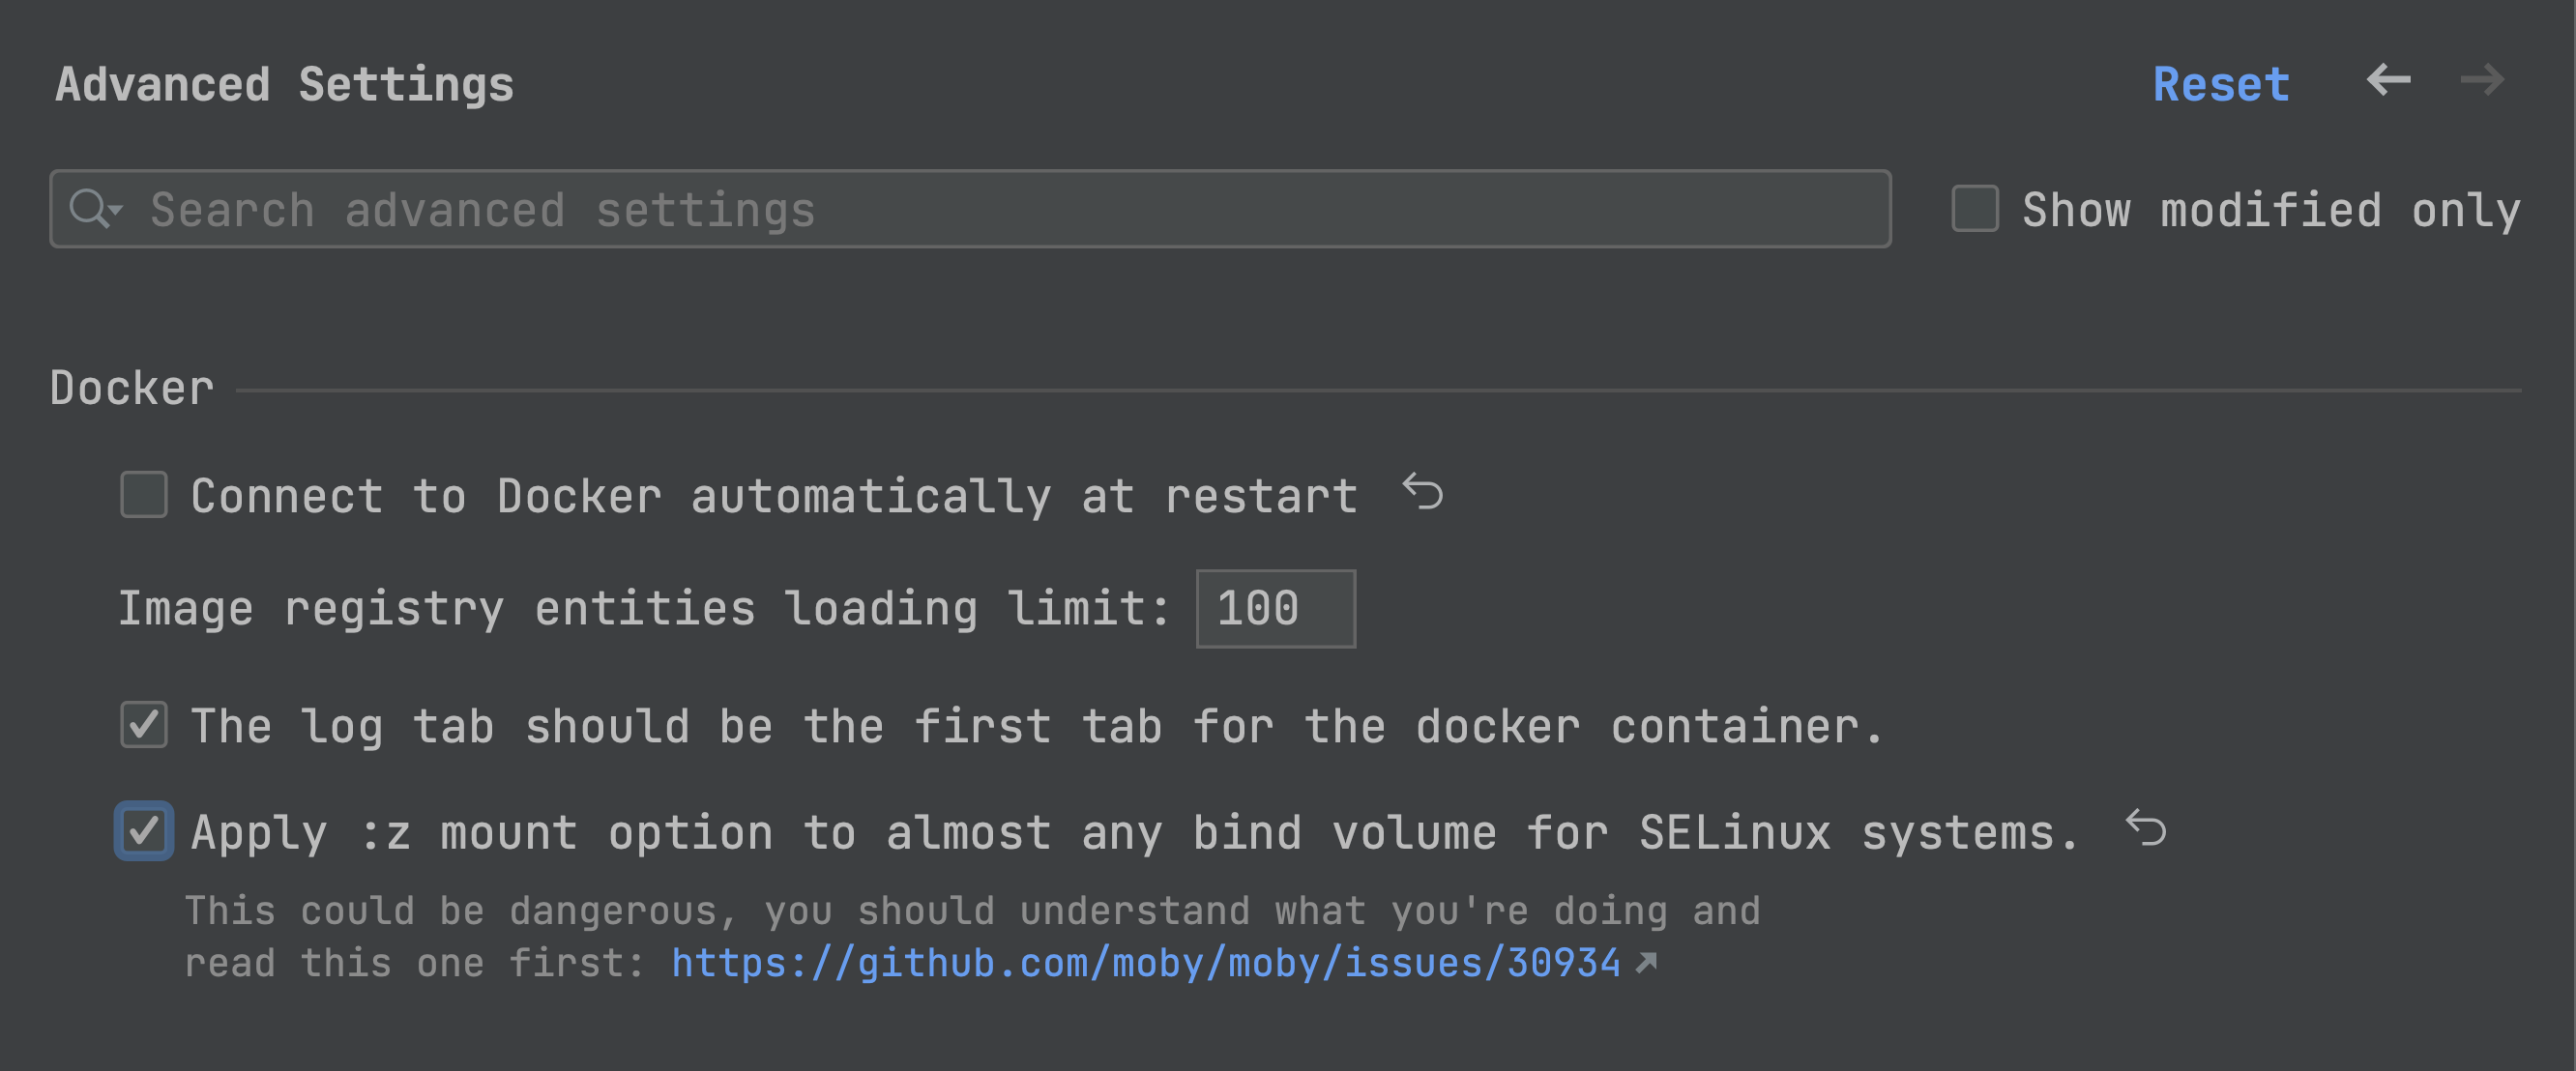 所示为应用 :z 装载选项以在 SELinux 上绑定卷的新设置